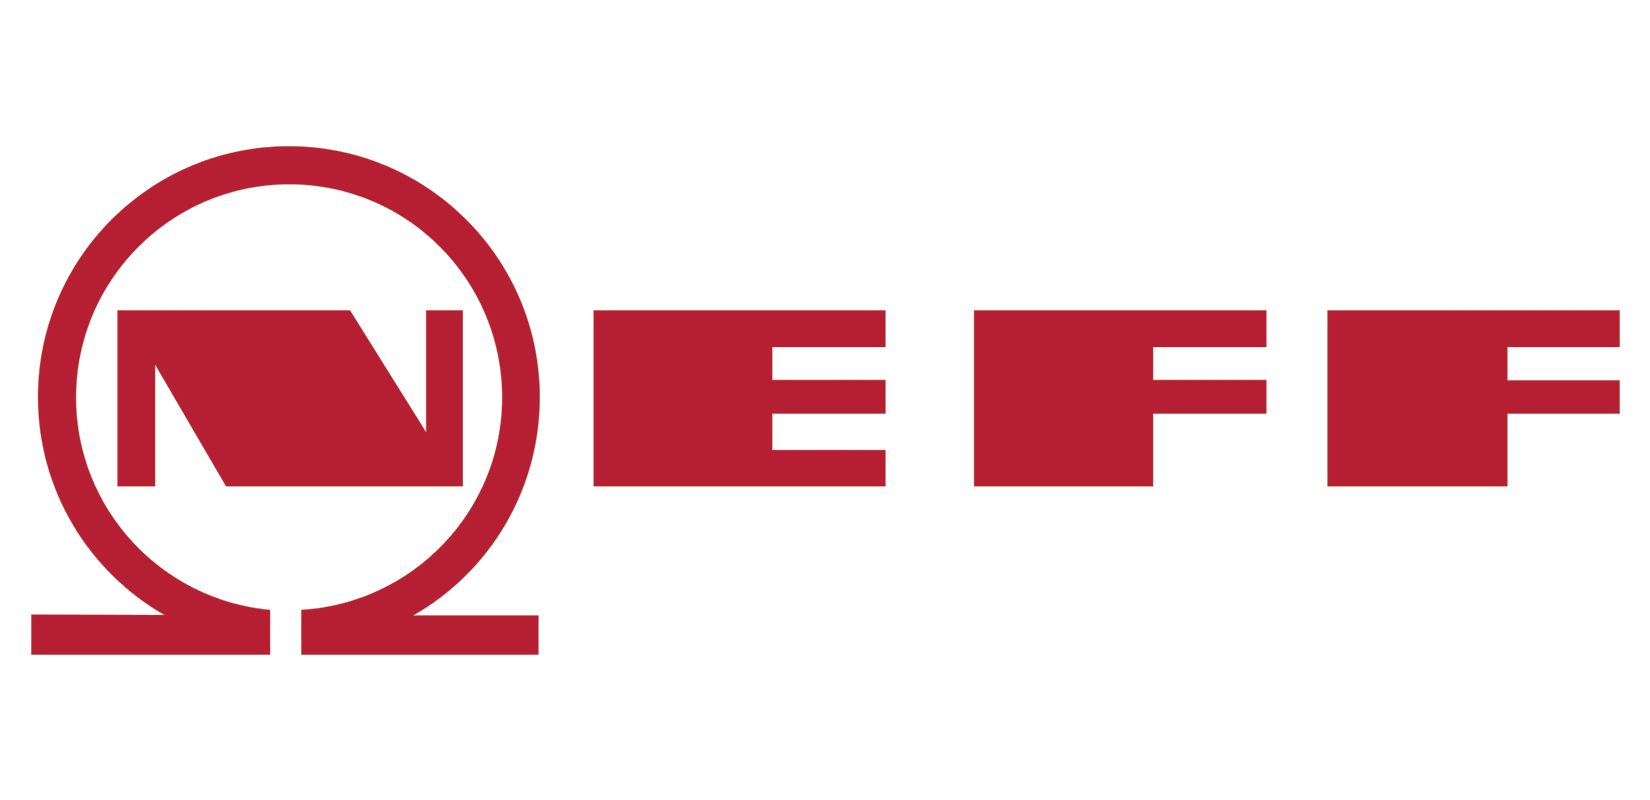 NEFF logo